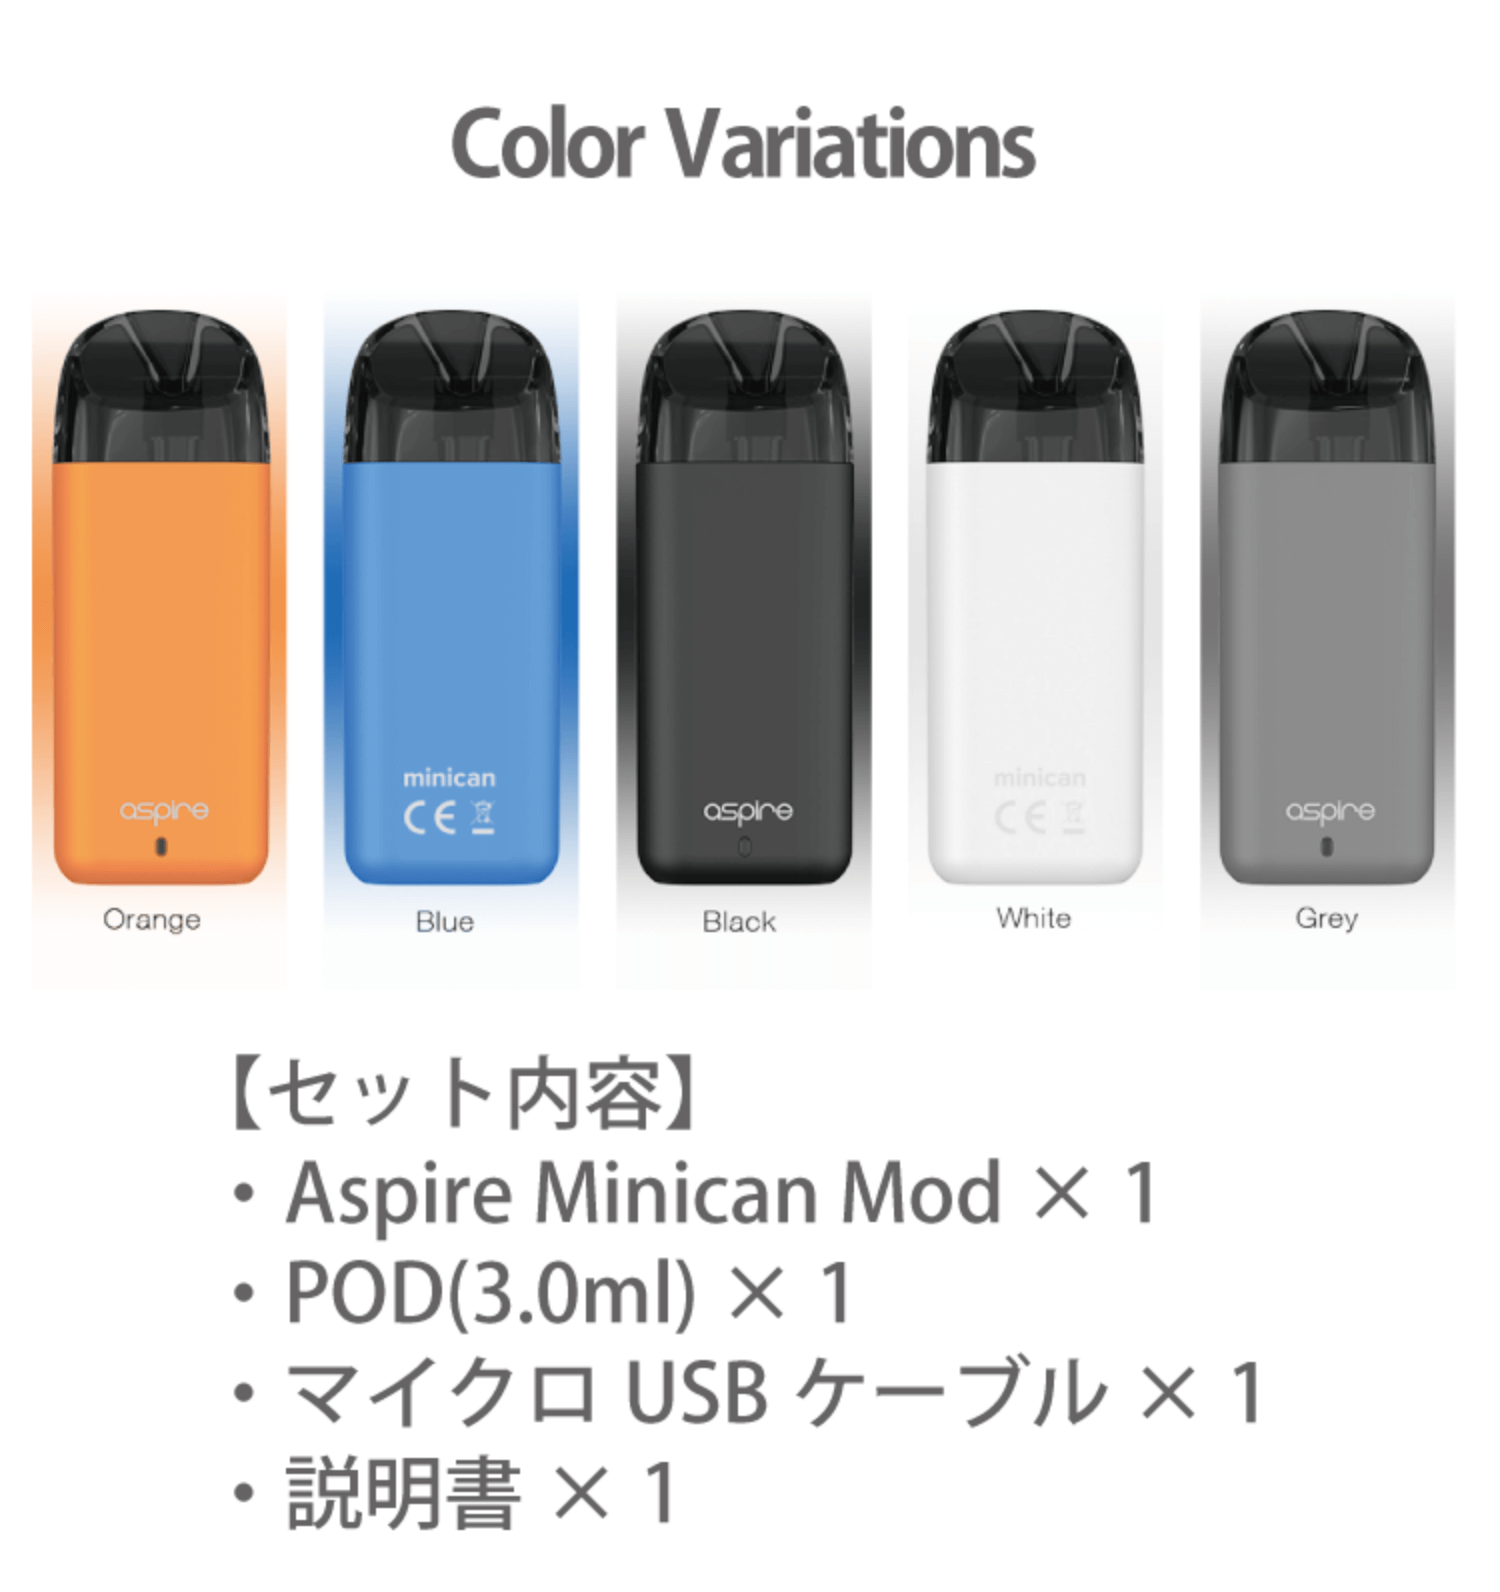 セット内容 Aspire Minican Mod 1 POD(3.0ml) 1 マイクロUSBケーブル 1 説明書 1 